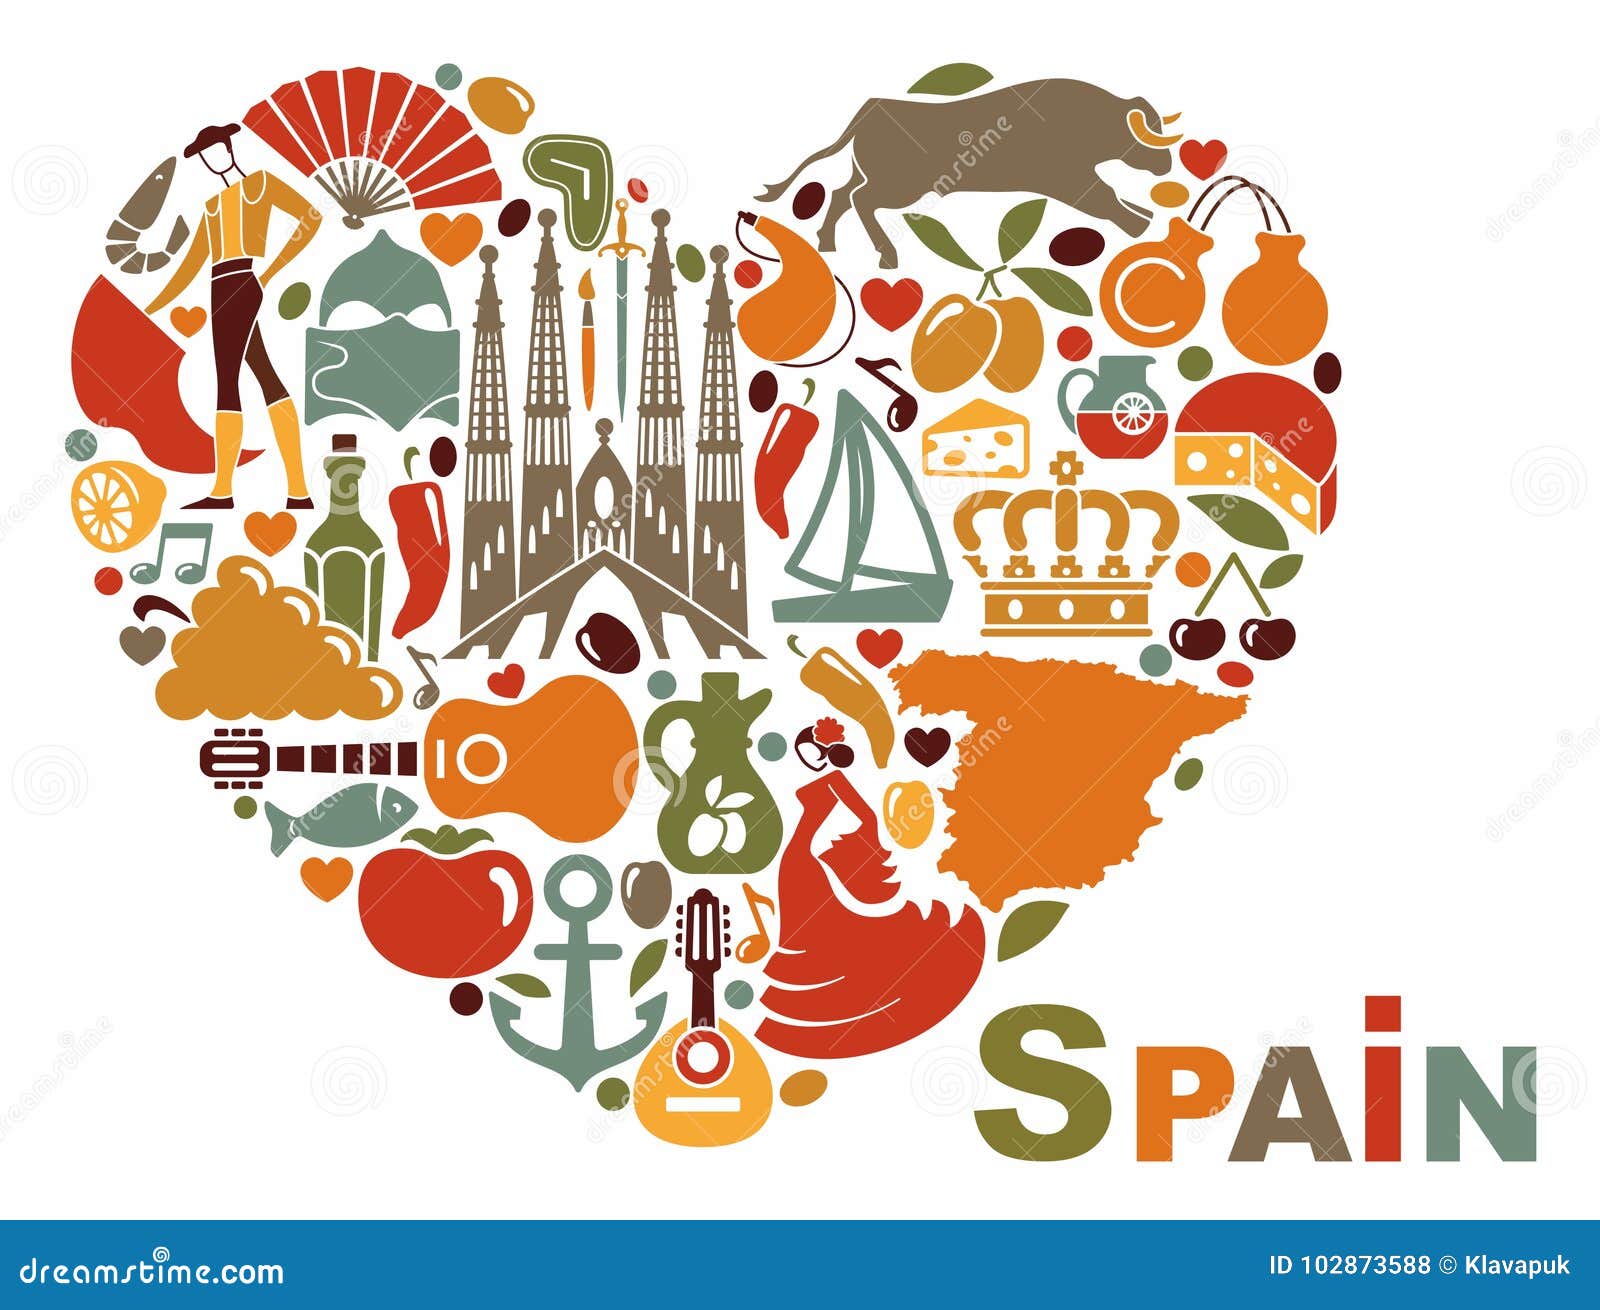 Spain Heart Stock Illustrations – 2,695 Spain Heart Stock